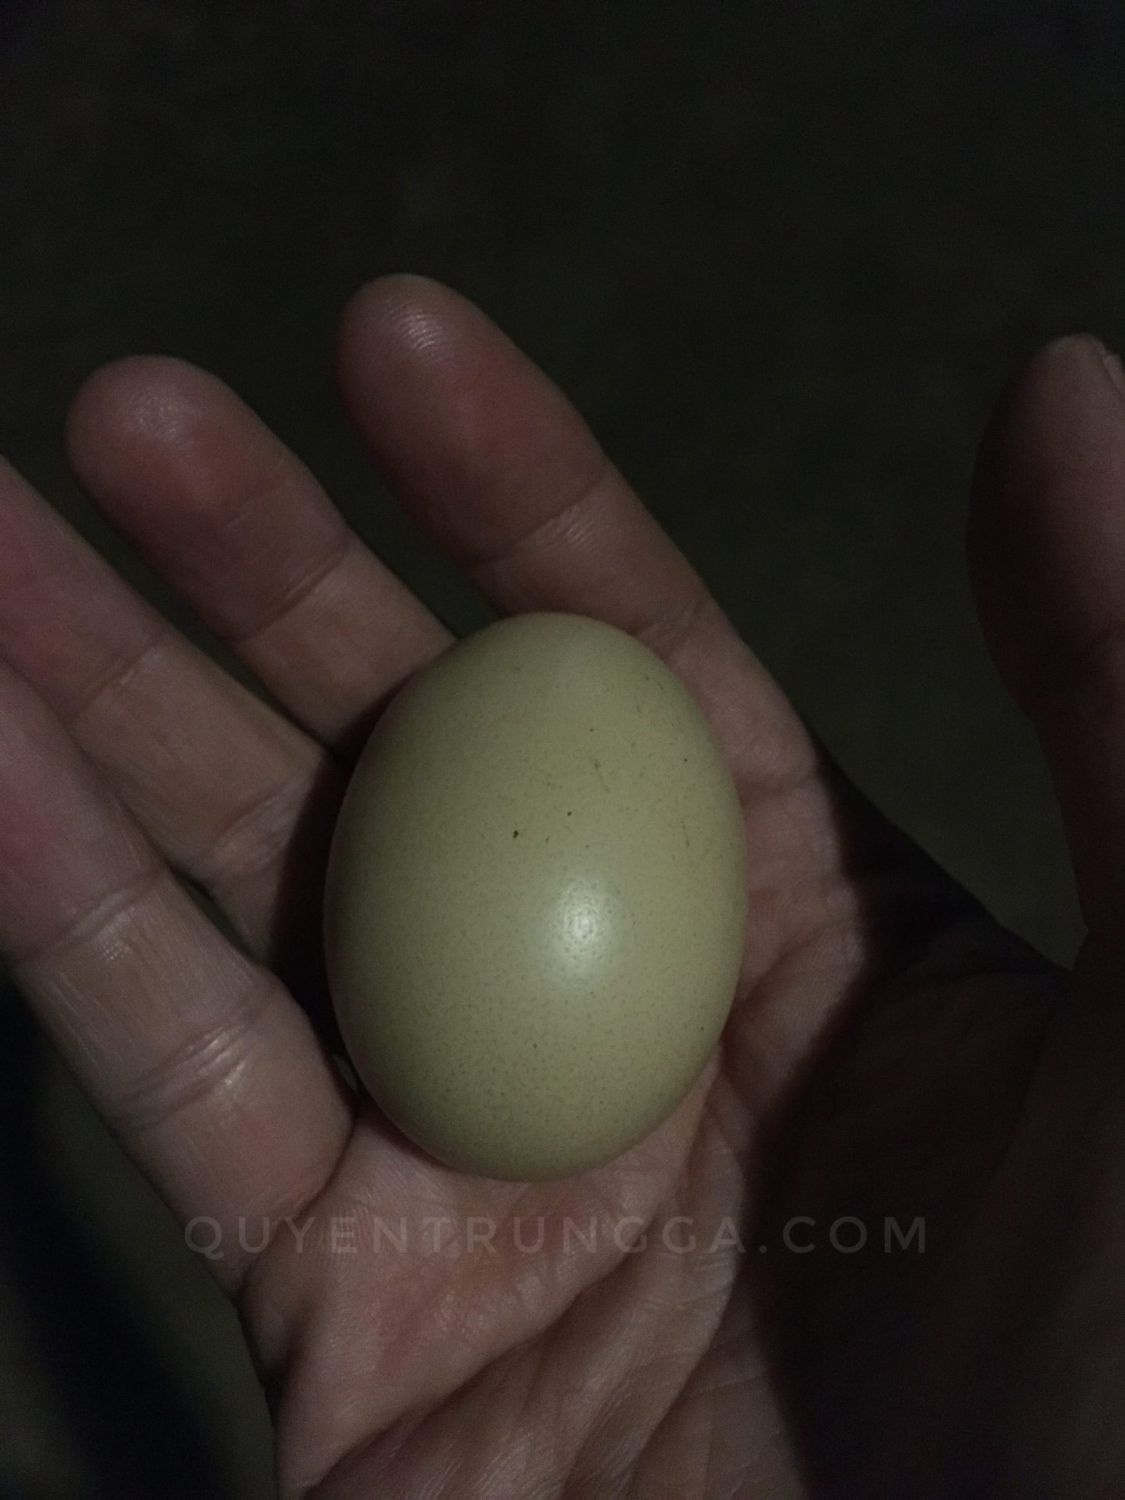 Trứng gà ta (thả vườn) được lụm trong vườn nhà, không bán trứng gà ta